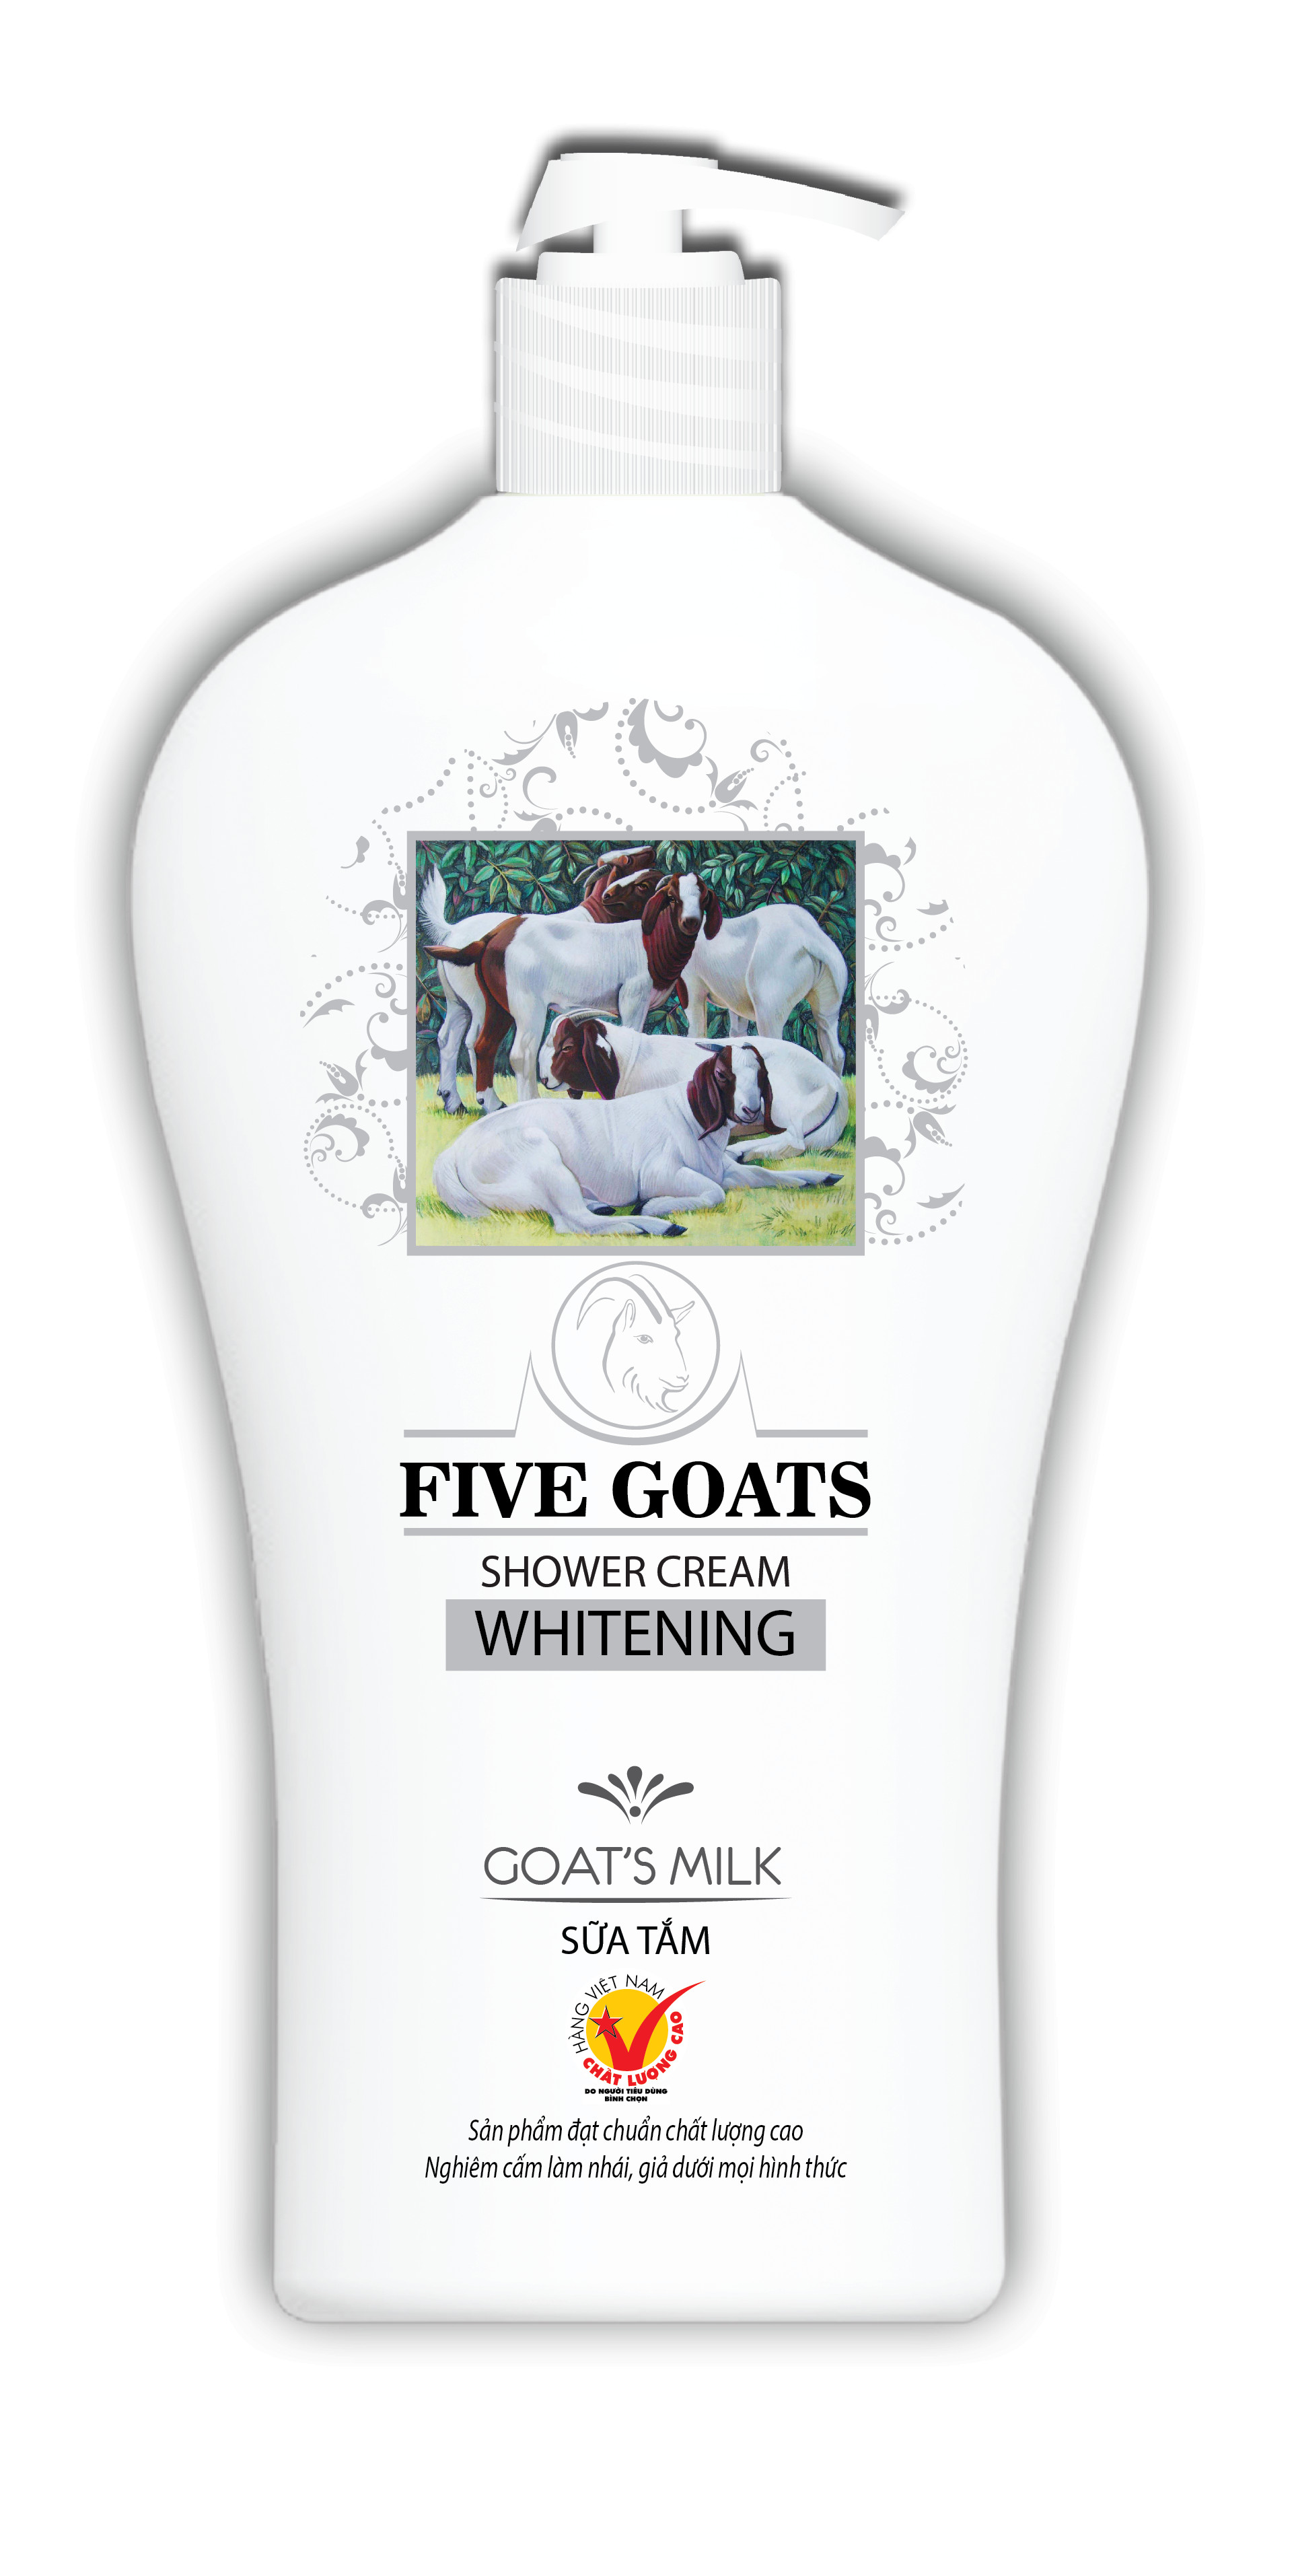 Combo sữa tắm hoa hồng Thebol 900g + Sữa tắm sữa dê Five Goats 500g + Dầu gội dược liệu sạch Thebol tinh dầu dừa 190g